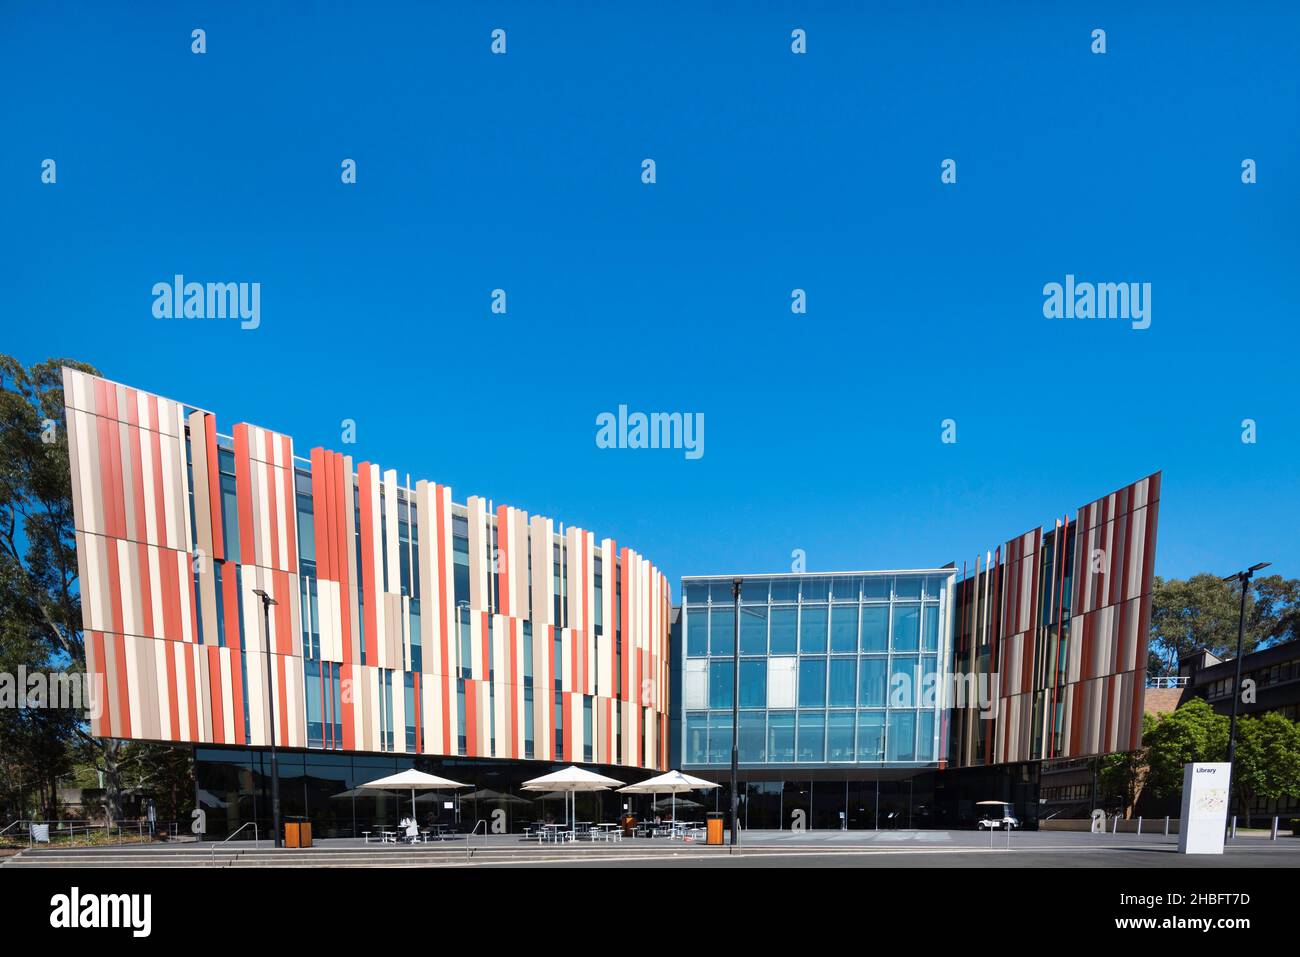 Eine Vorderansicht des neuen Bibliotheksgebäudes an der Macquarie University in Sydney, Australien, dessen Farben die lokalen getupften Gummibäume repräsentieren. Stockfoto